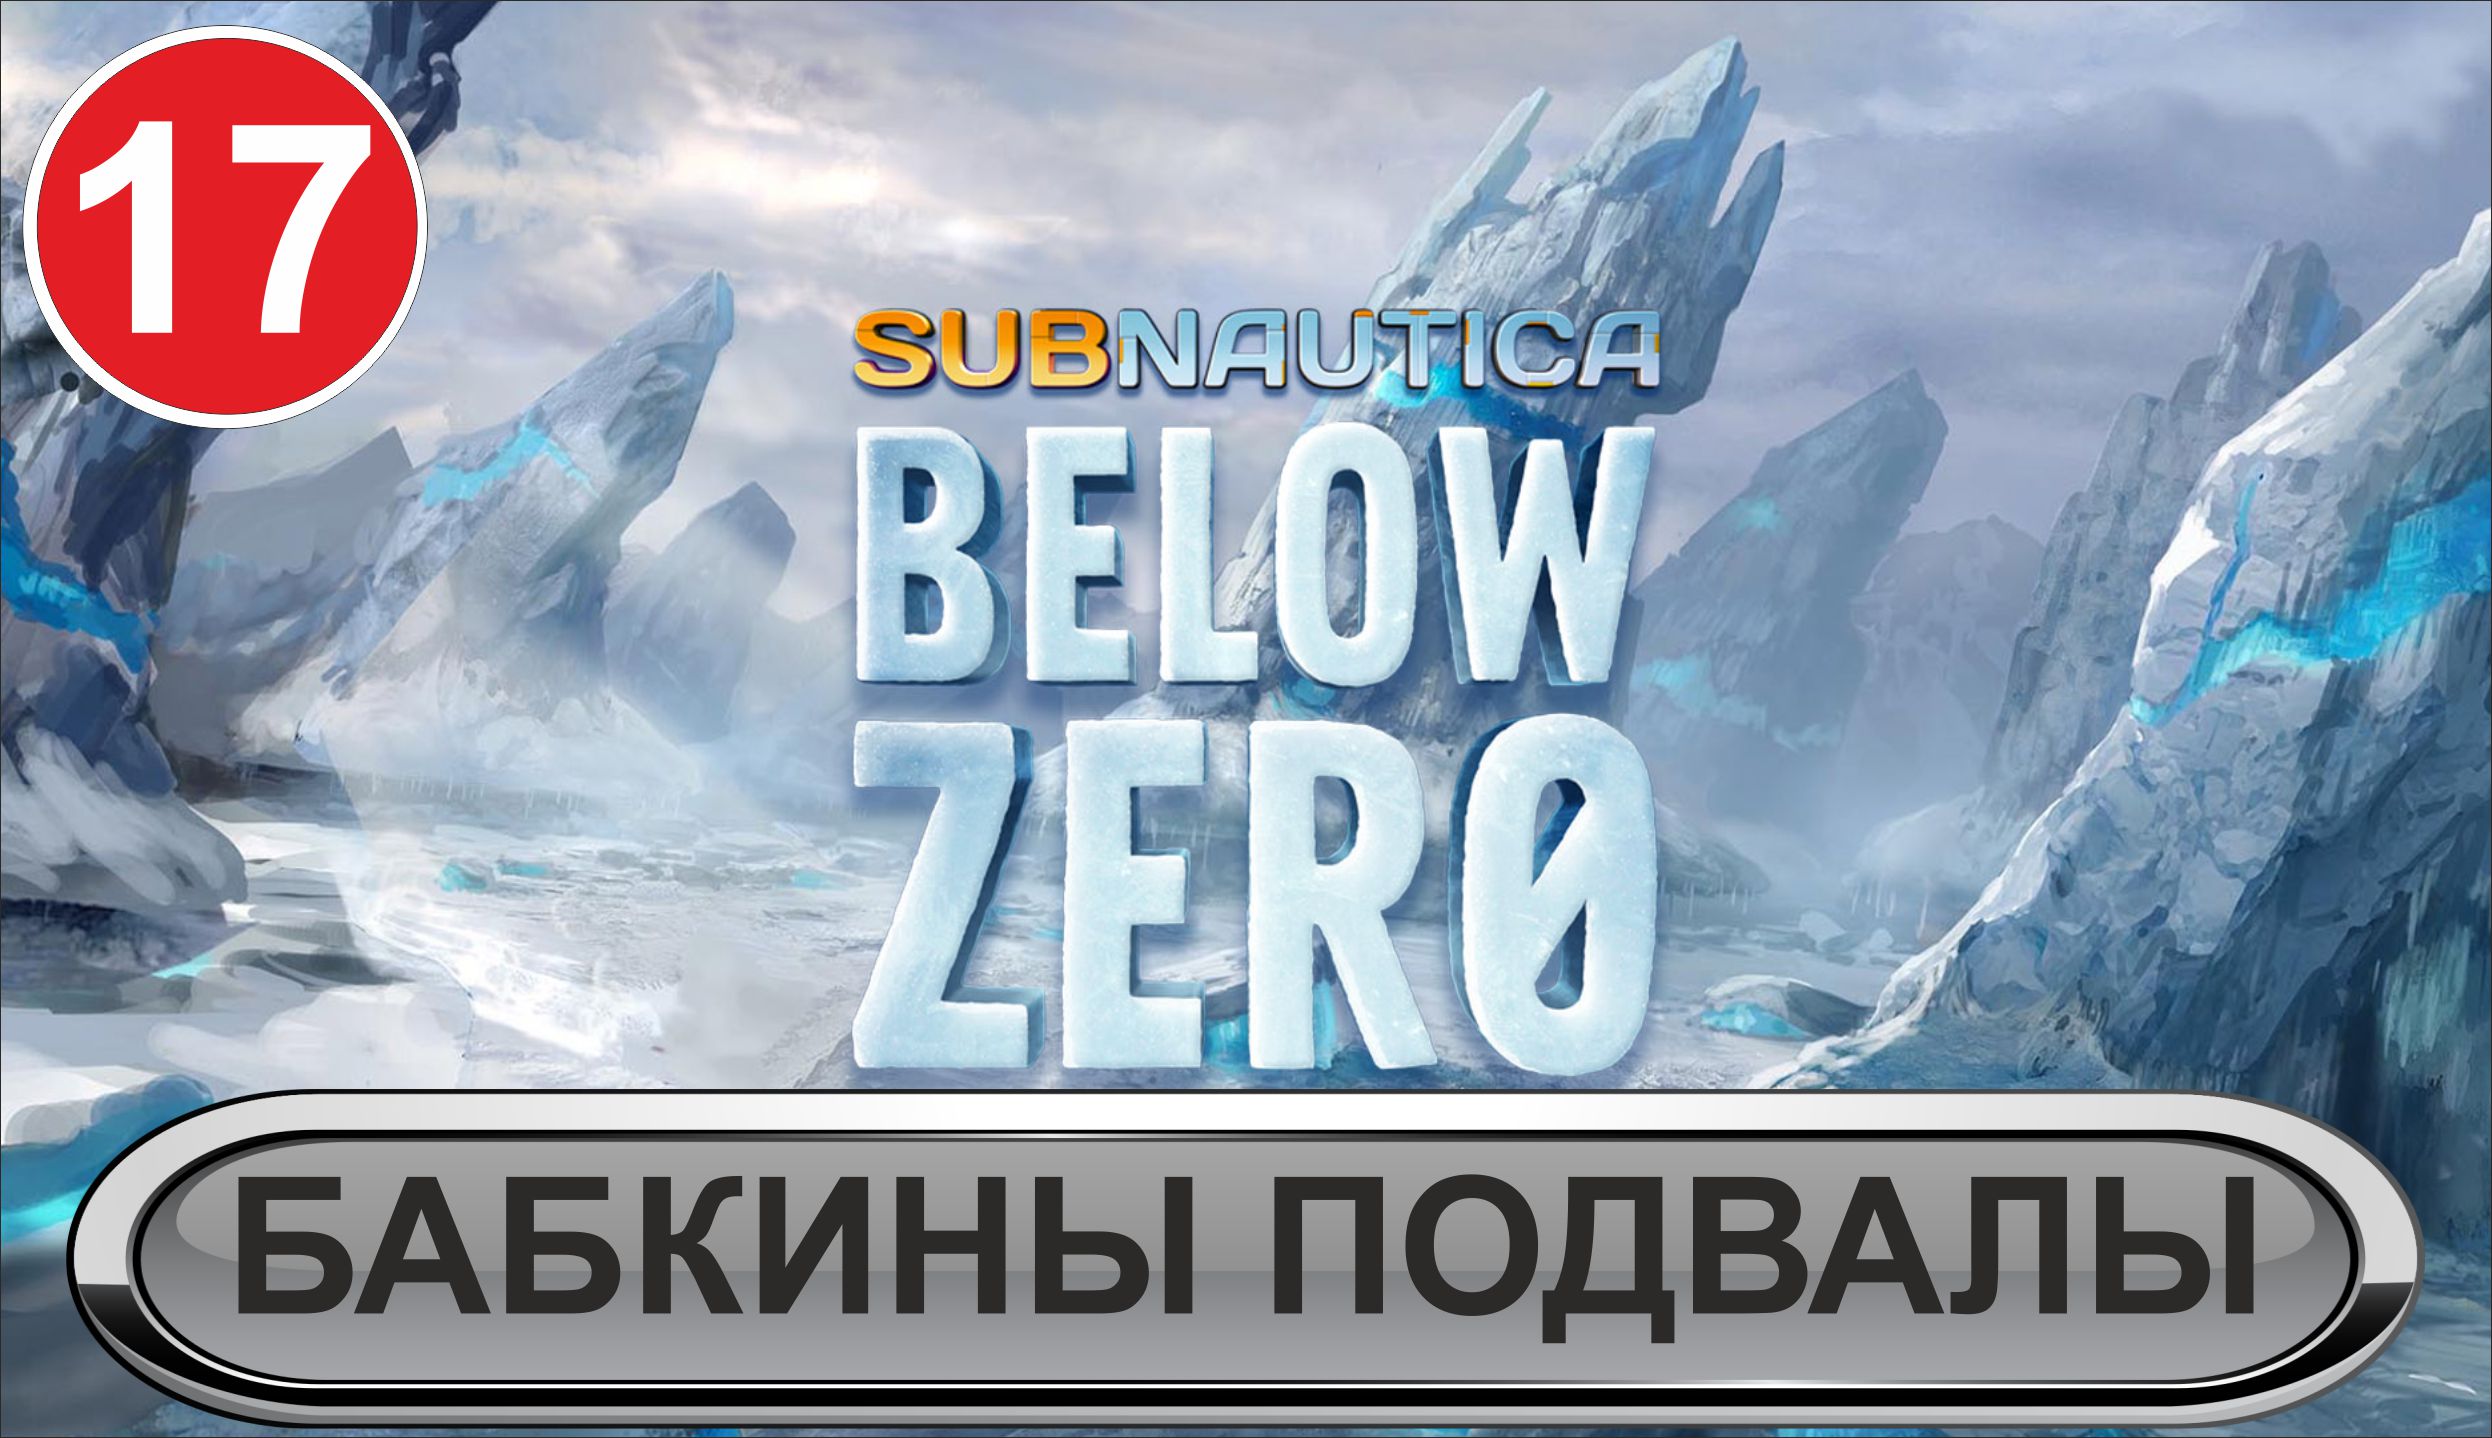 Subnautica: Below Zero - Бабкины подвалы